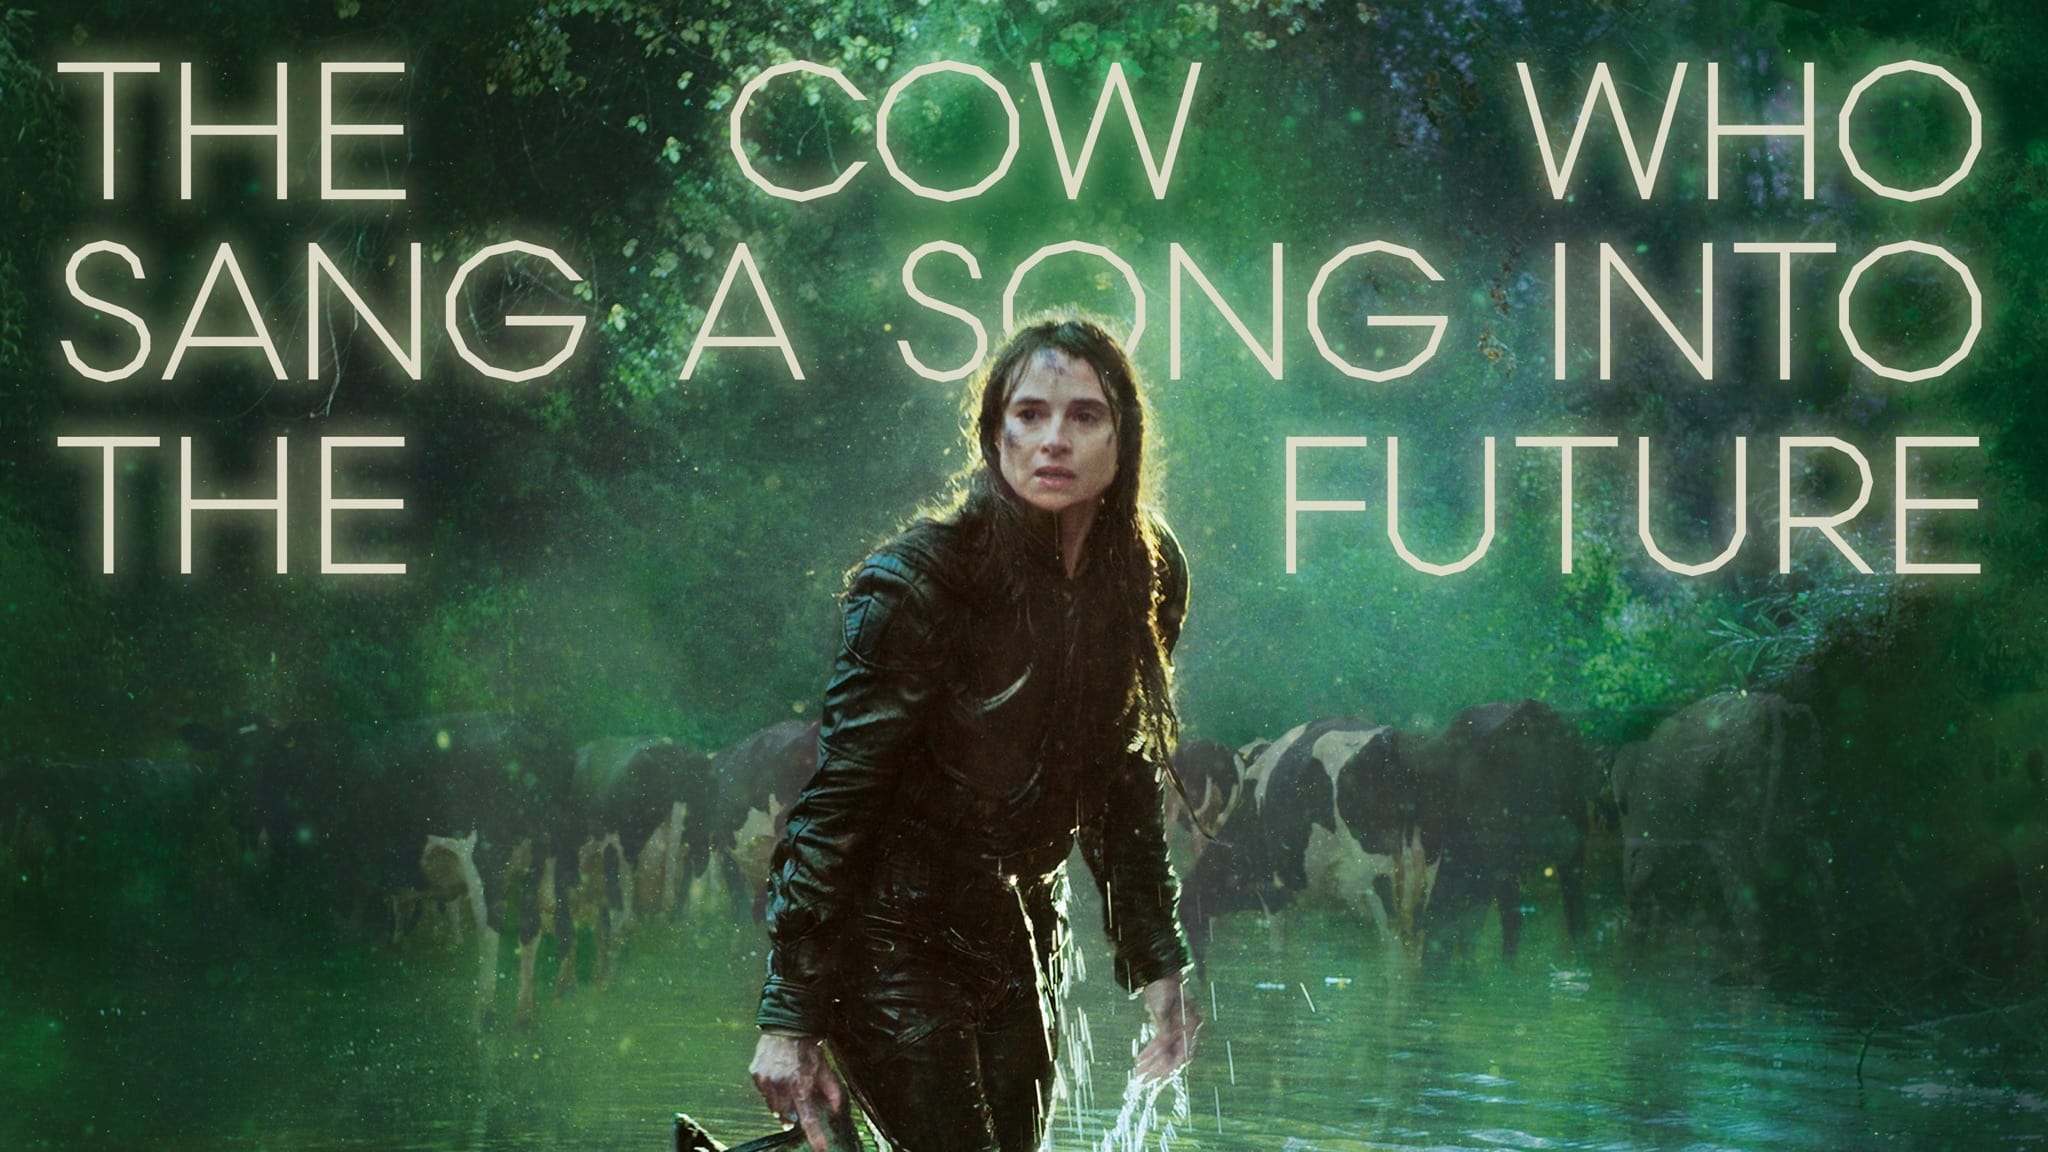 La vaca que canto una cancion sobre el futuro